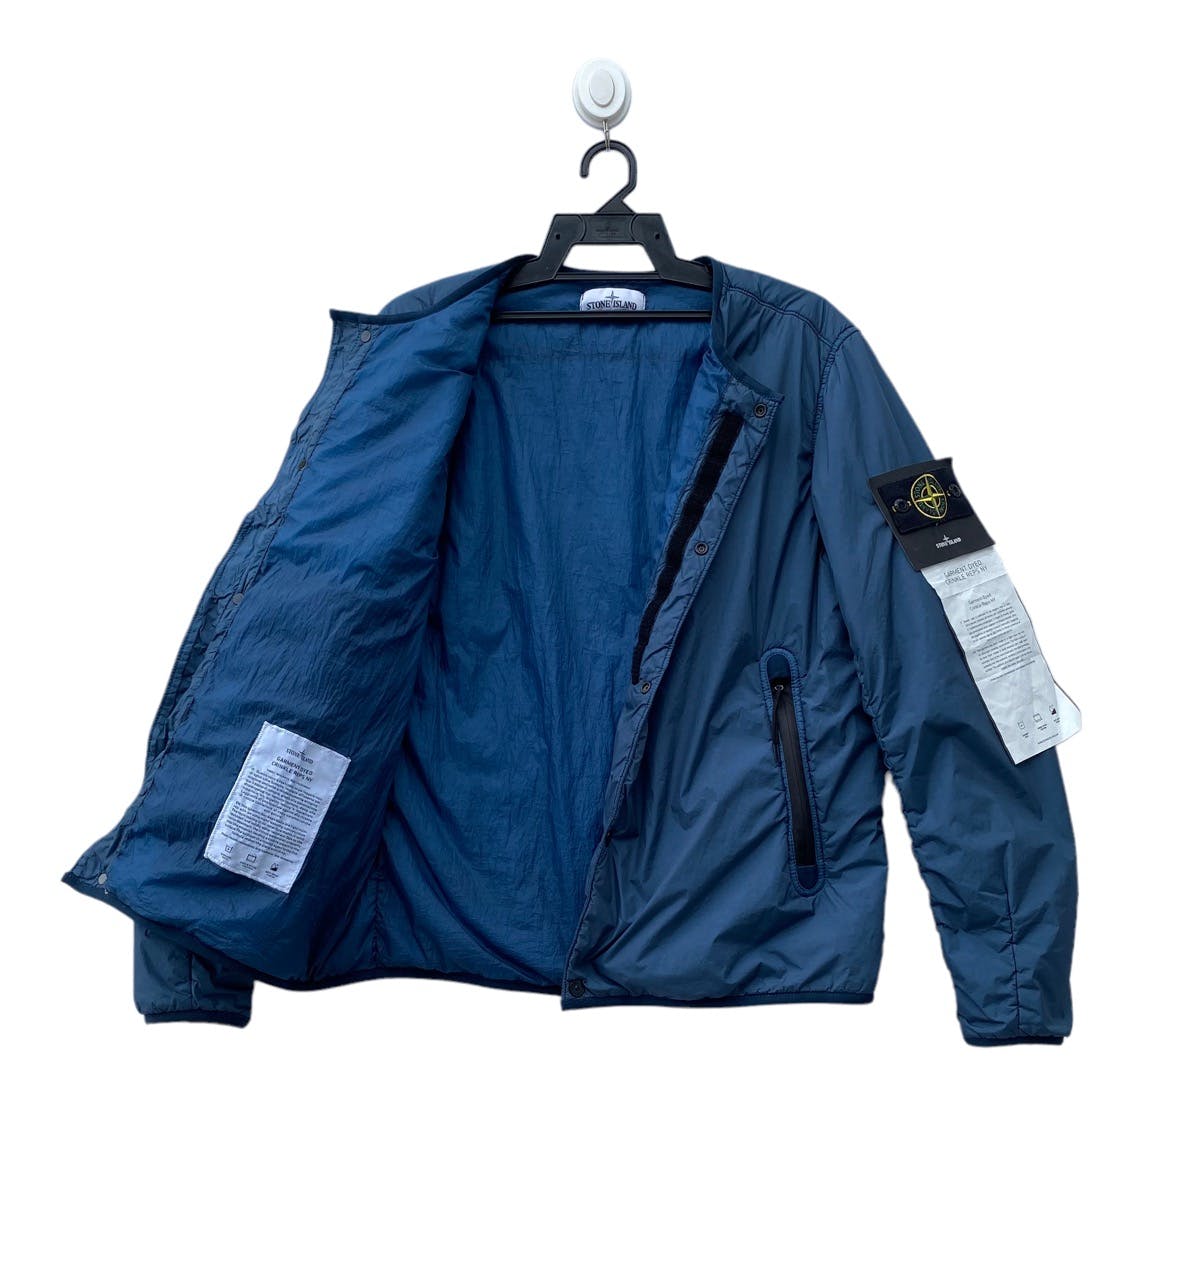 STONE ISLAND garment dyed crinkle reps ny blouson jacket - 5